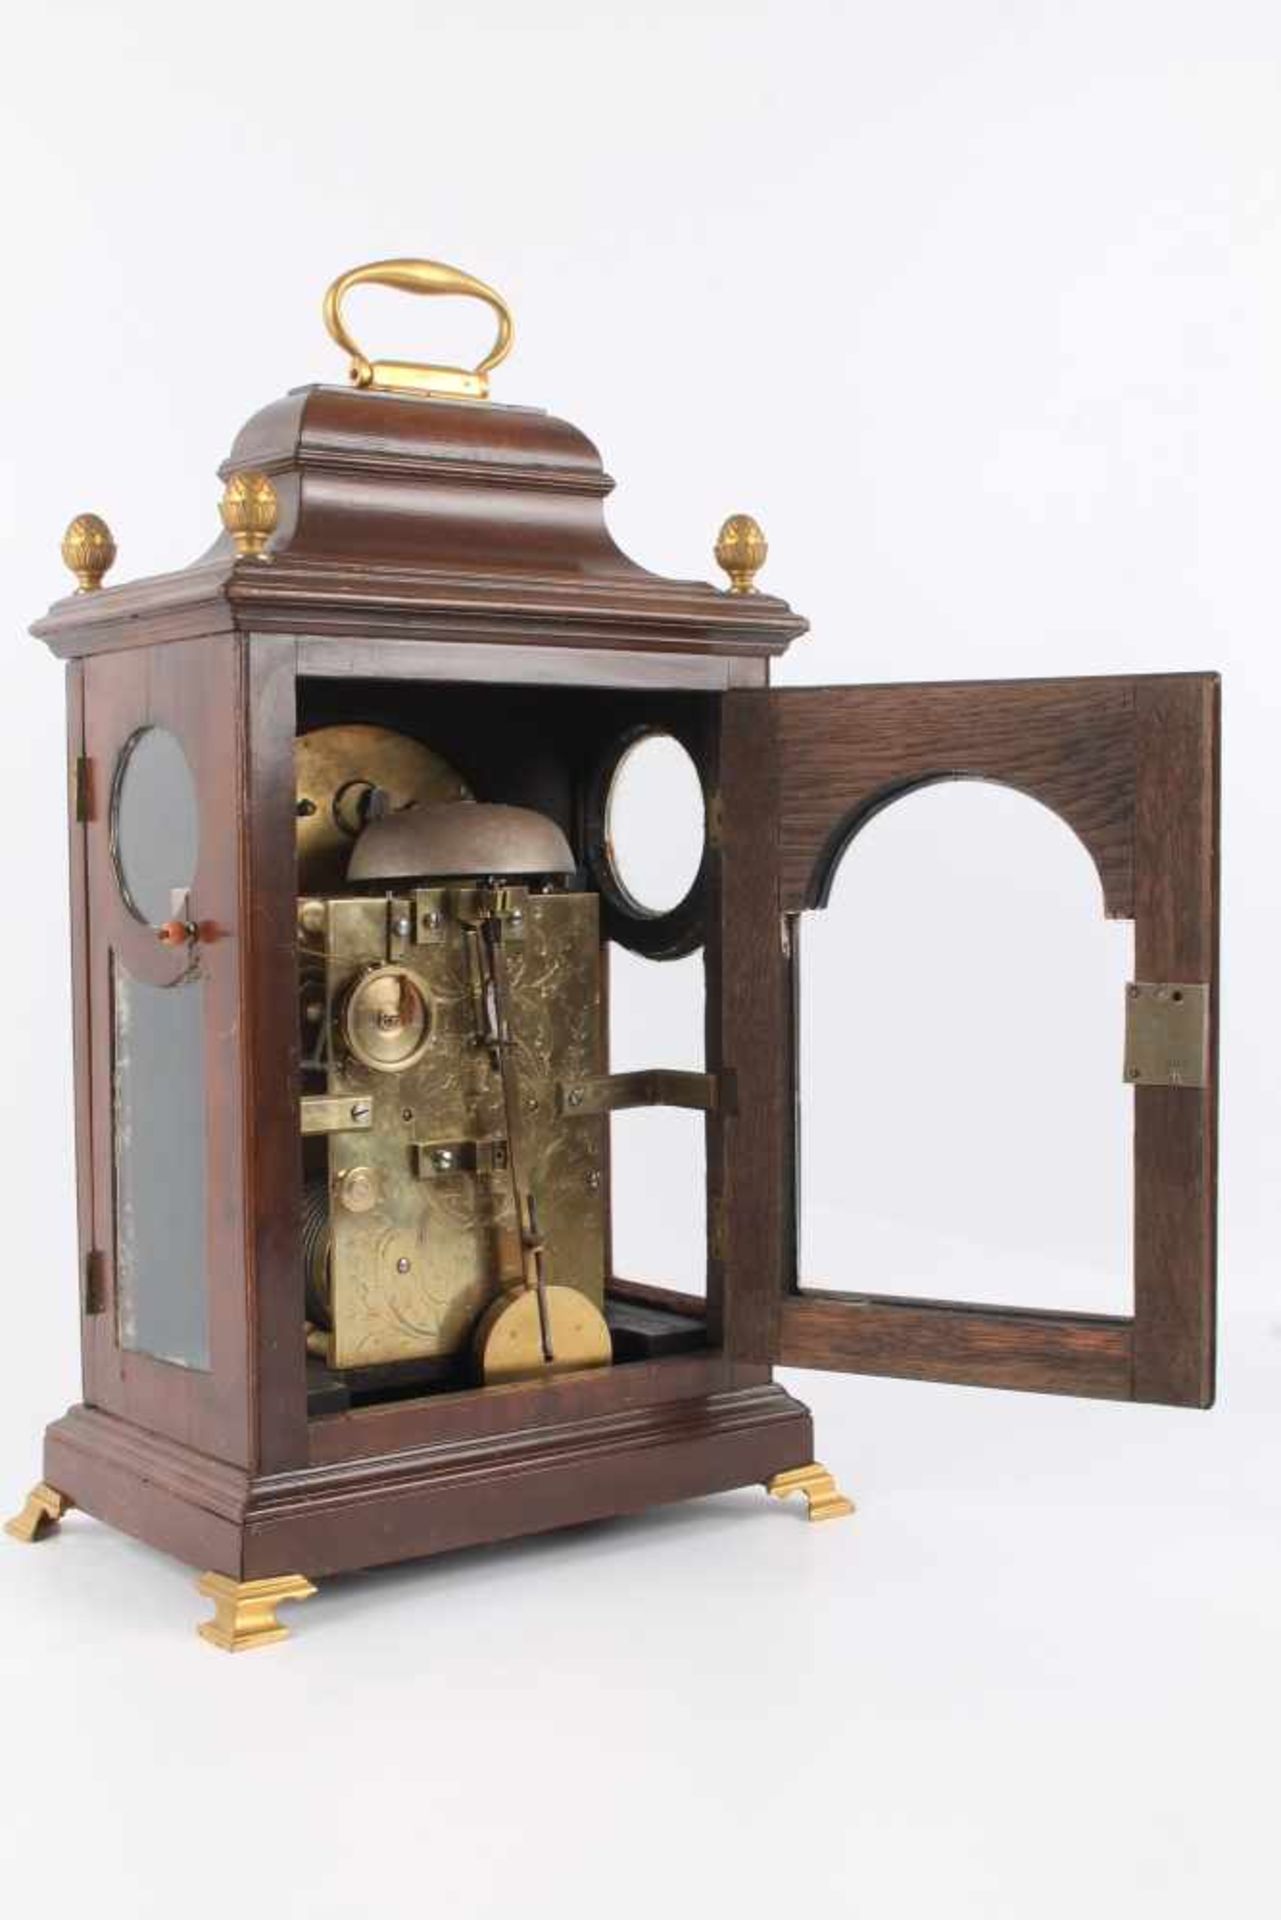 Stockuhr, London, bracket clock,Holzgehäuse m. Messingaplikken, verziertes Zifferblatt, bezeichnet - Bild 4 aus 6